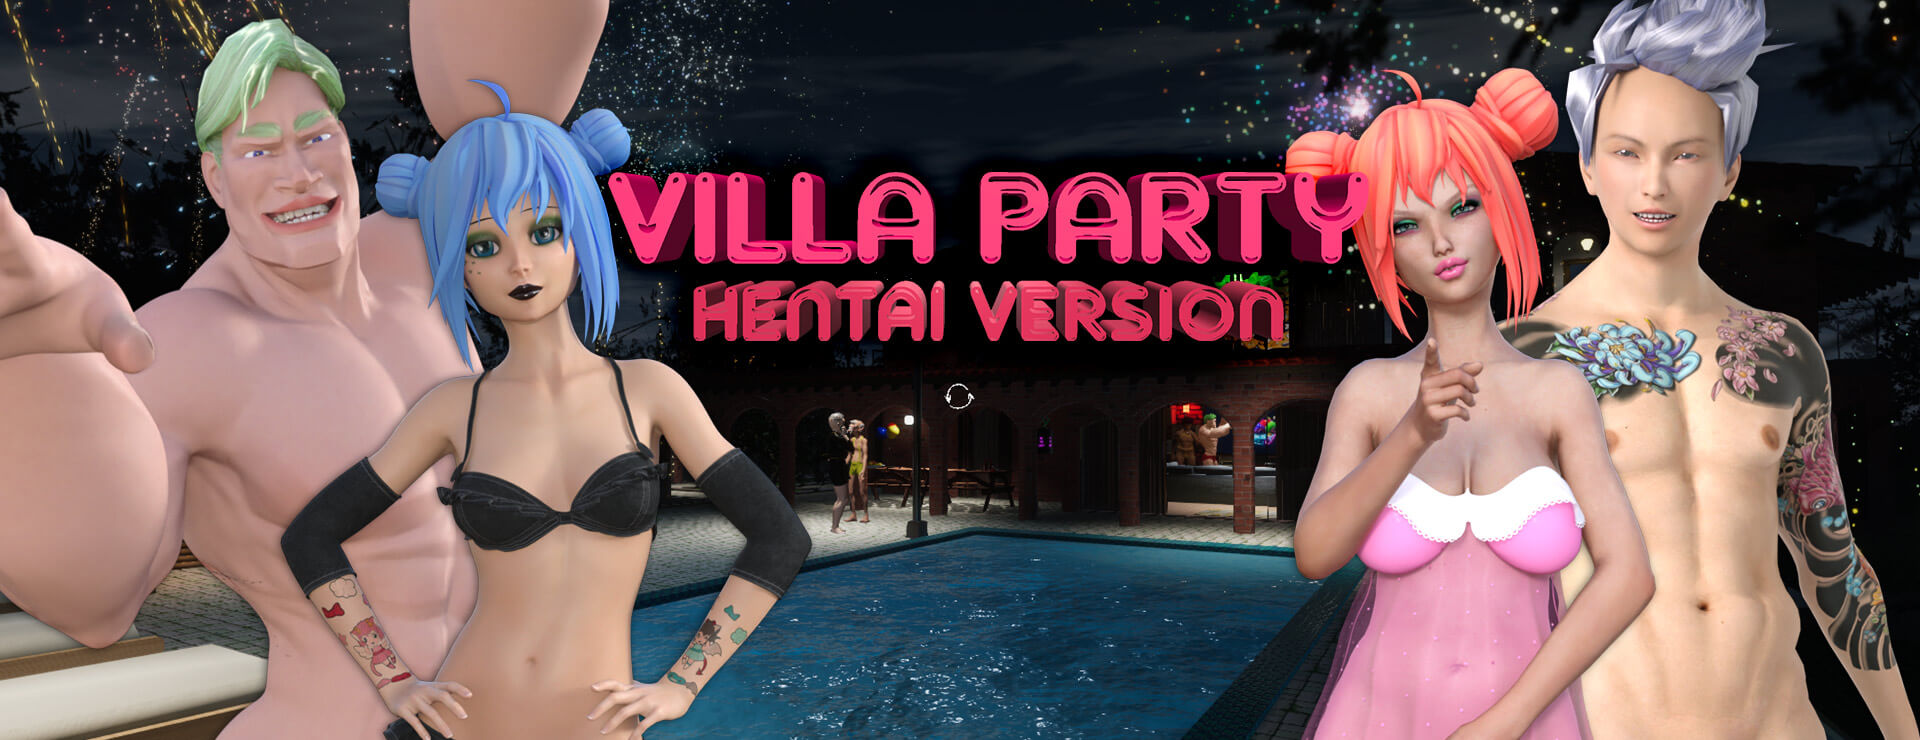 Villa Party – Hentai Version - Action Adventure Spiel